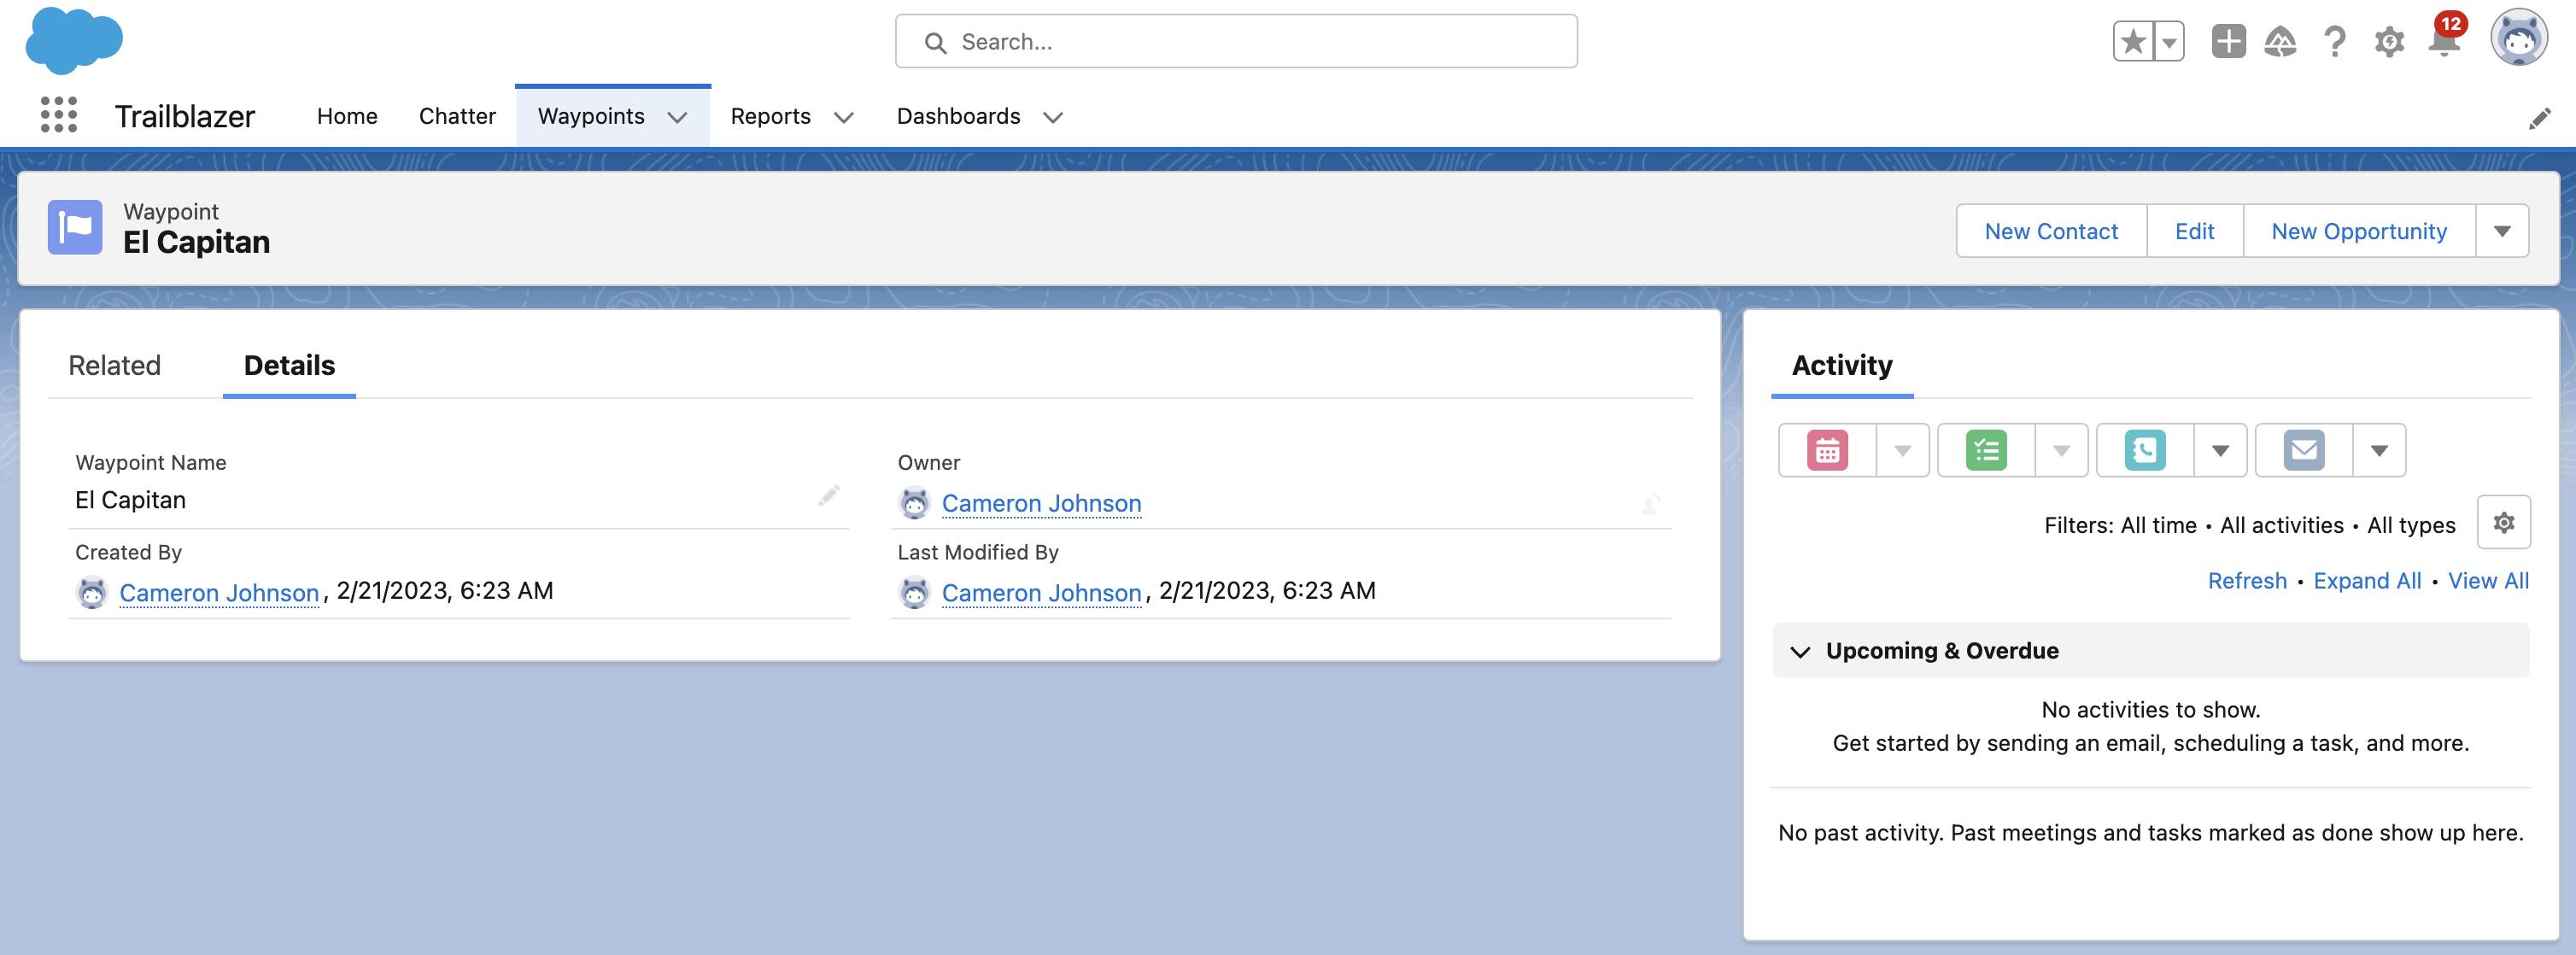 Esta é uma captura de tela mostrando o registro El Capitan que você criou no Salesforce. Ele tem quatro campos: Waypoint Name (Nome do waypoint), Created By (Criado por), Owner (Proprietário) e Last Modified By (Última modificação por). Também tem uma linha de tempo de atividade.